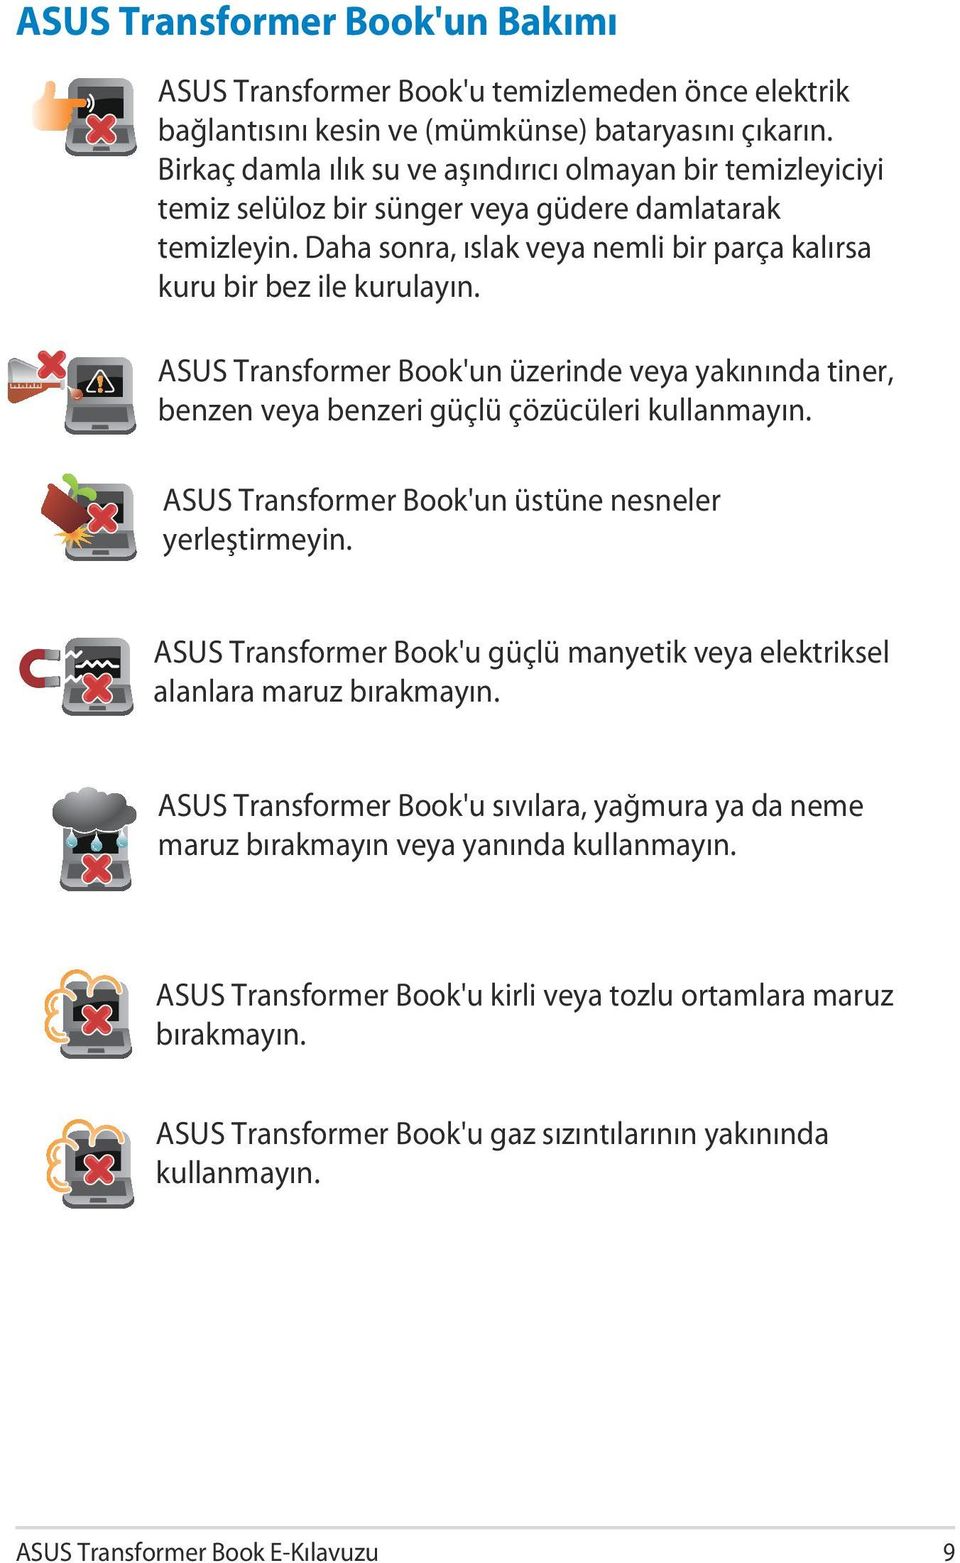 ASUS Transformer Book'un üzerinde veya yakınında tiner, benzen veya benzeri güçlü çözücüleri kullanmayın. ASUS Transformer Book'un üstüne nesneler yerleştirmeyin.